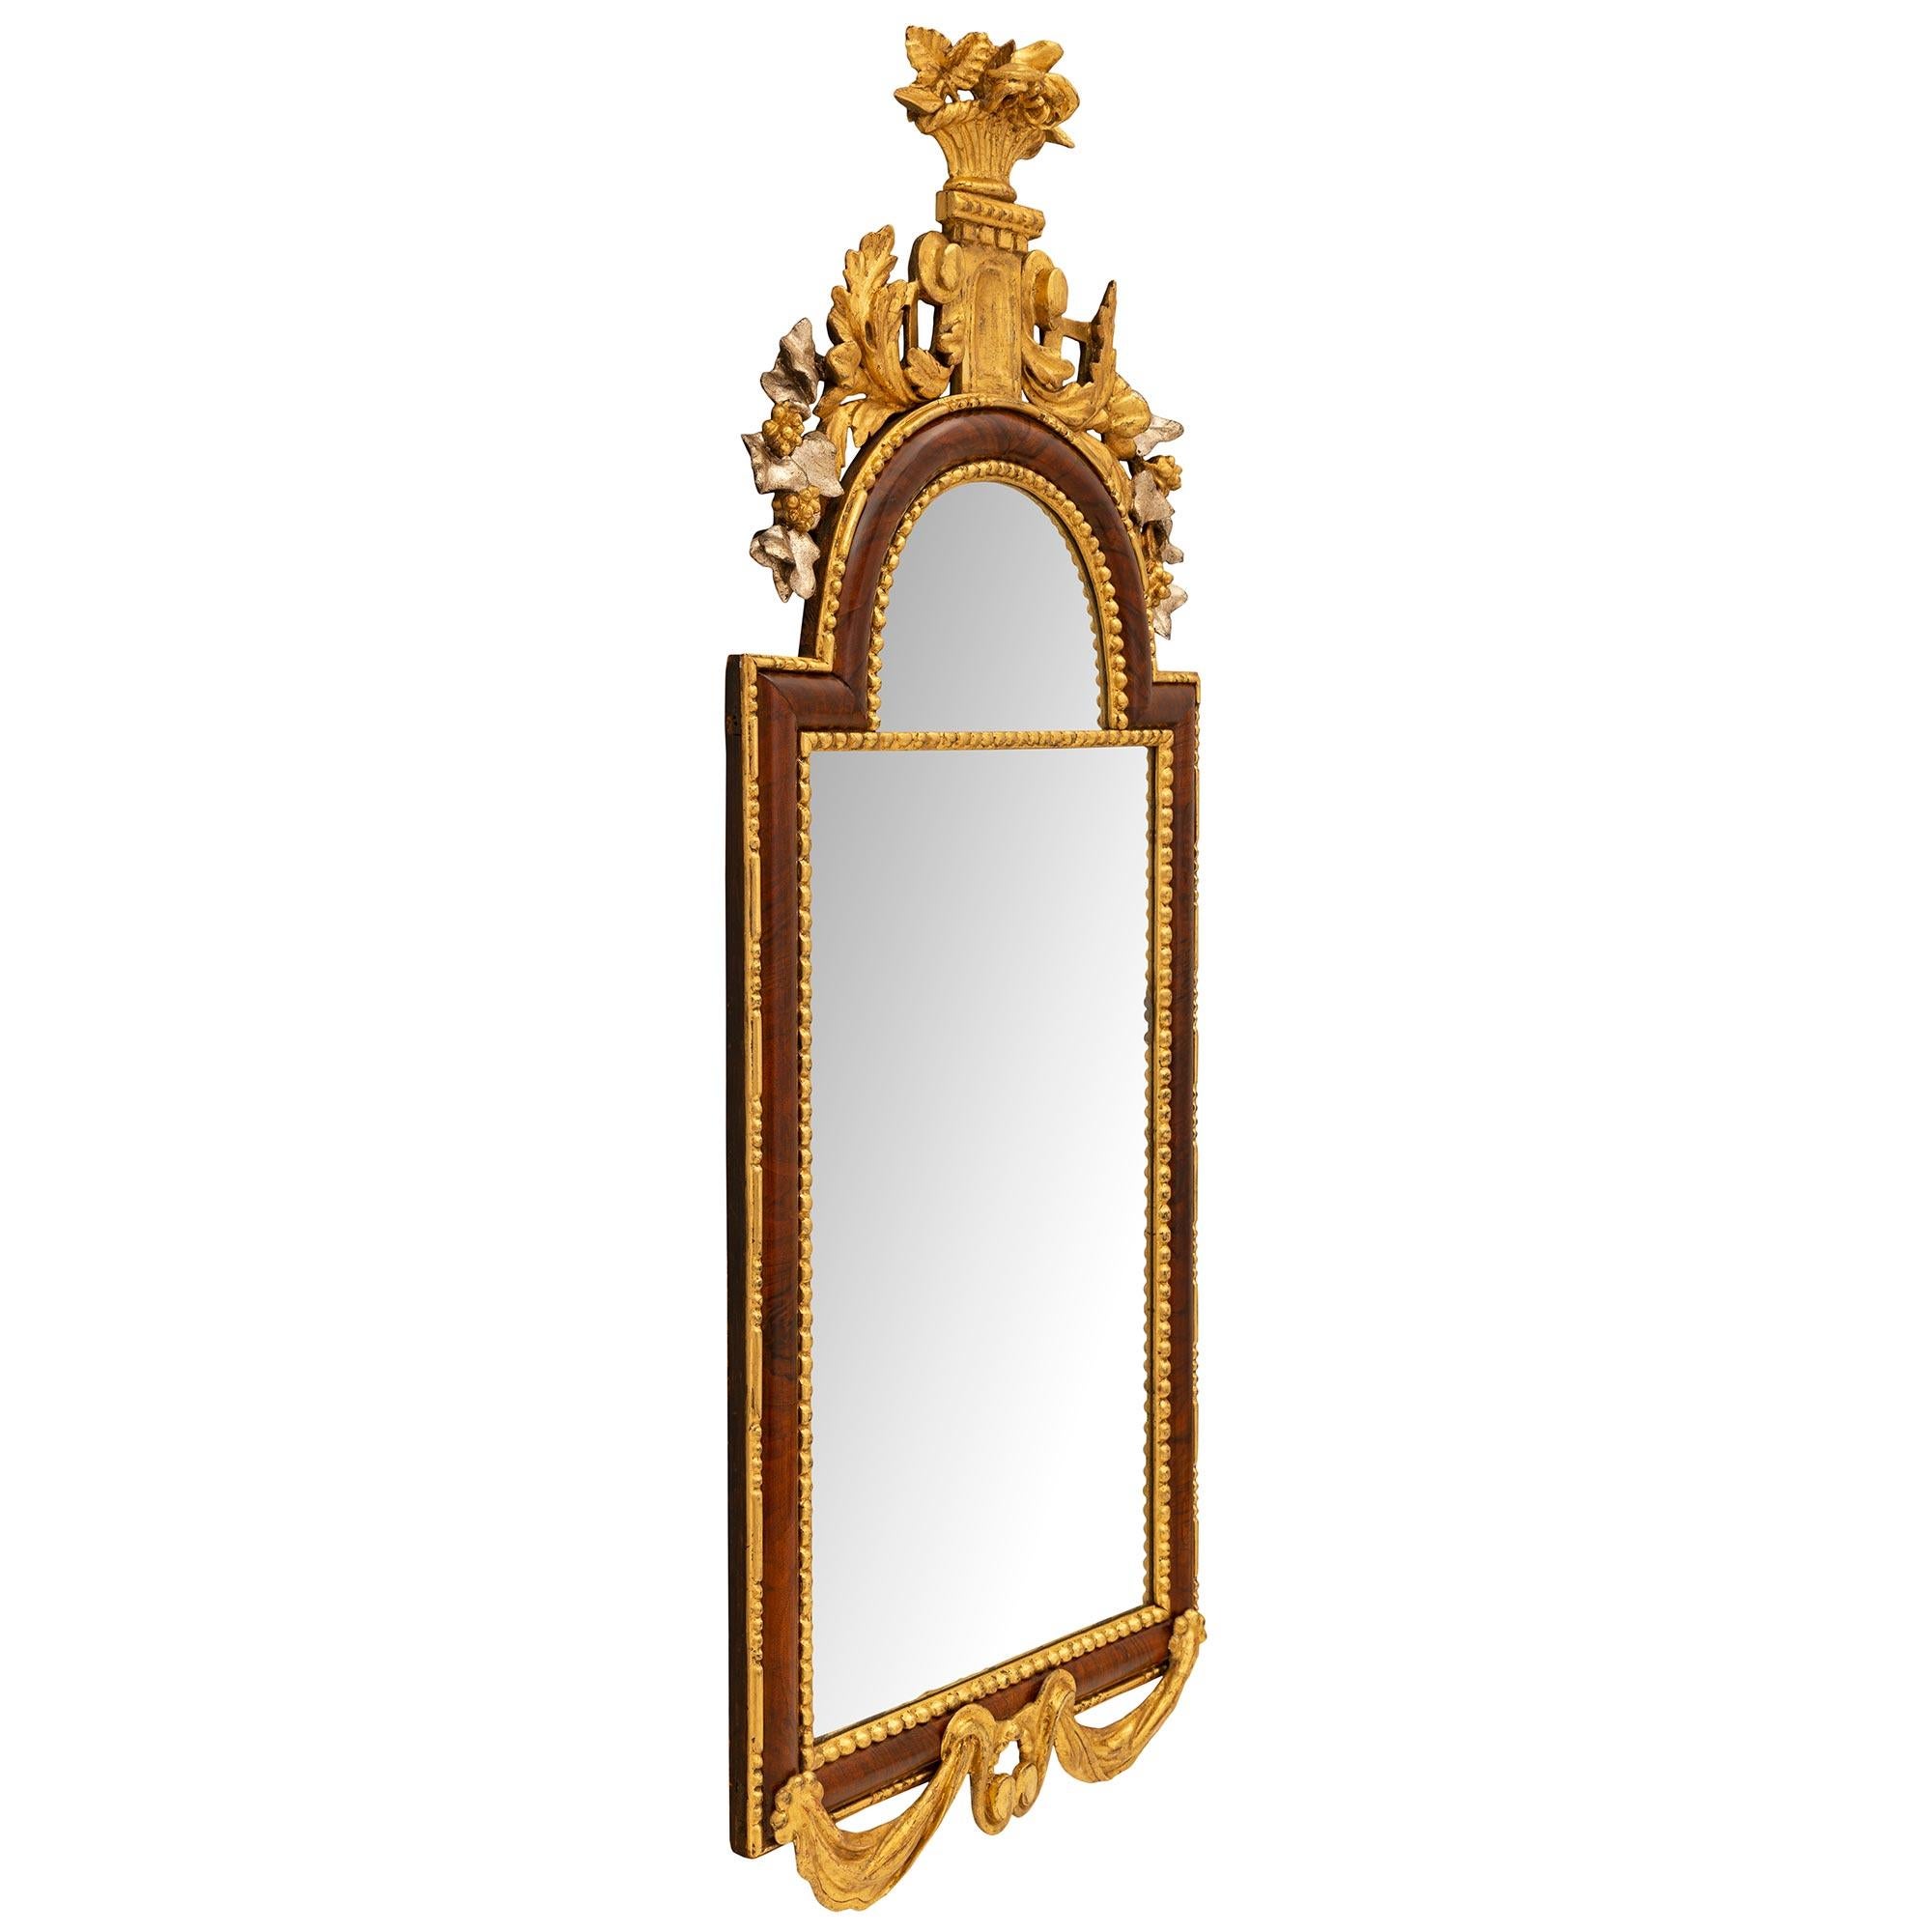 Exceptionnel et très unique miroir allemand d'époque néo-classique du 18ème siècle en ronce de noyer, bois doré et Mecque. Le miroir conserve ses plaques d'origine, chacune étant encadrée par une bande de bois doré perlée très décorative. Le cadre